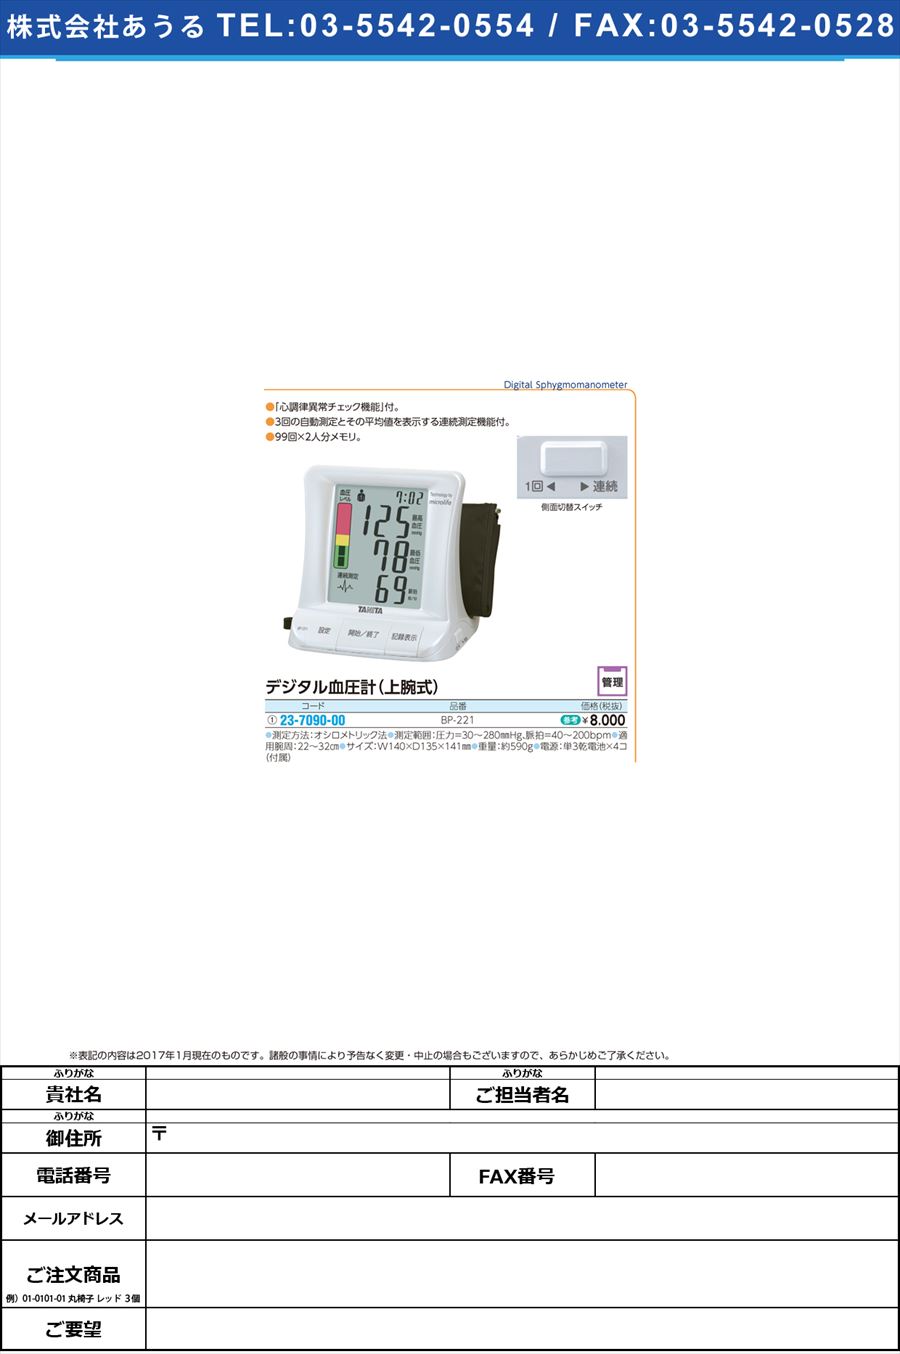 (23-7090-00)デジタル血圧計（上腕式） ﾃﾞｼﾞｹﾂｱﾂｹｲ(ｼﾞｮｳﾜﾝｼｷ) BP-221(ﾊﾟｰﾙﾎﾜｲﾄ)(23-7090-00)【1台単位】【2017年カタログ商品】